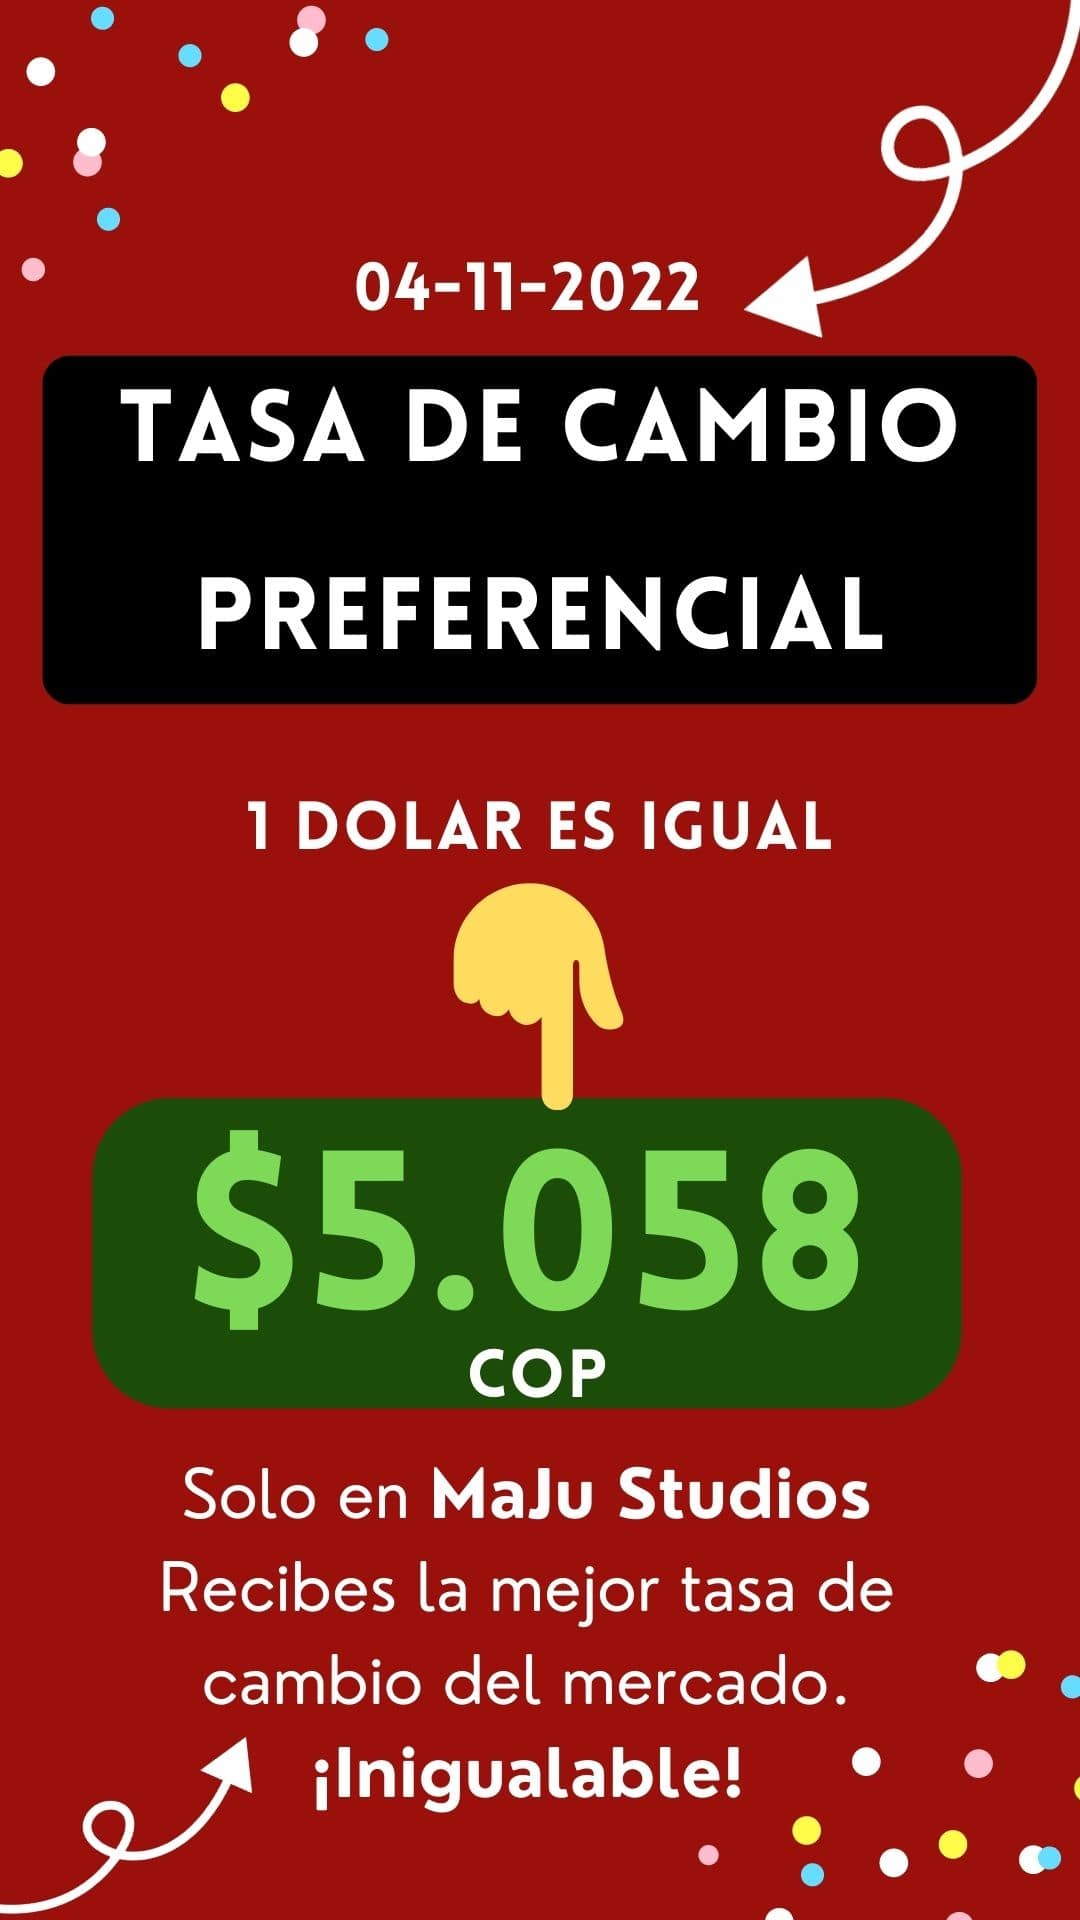 tasa de cambio preferencial dolar hoy en Manizales min - MaJu Studios » Modelos WebCam Manizales